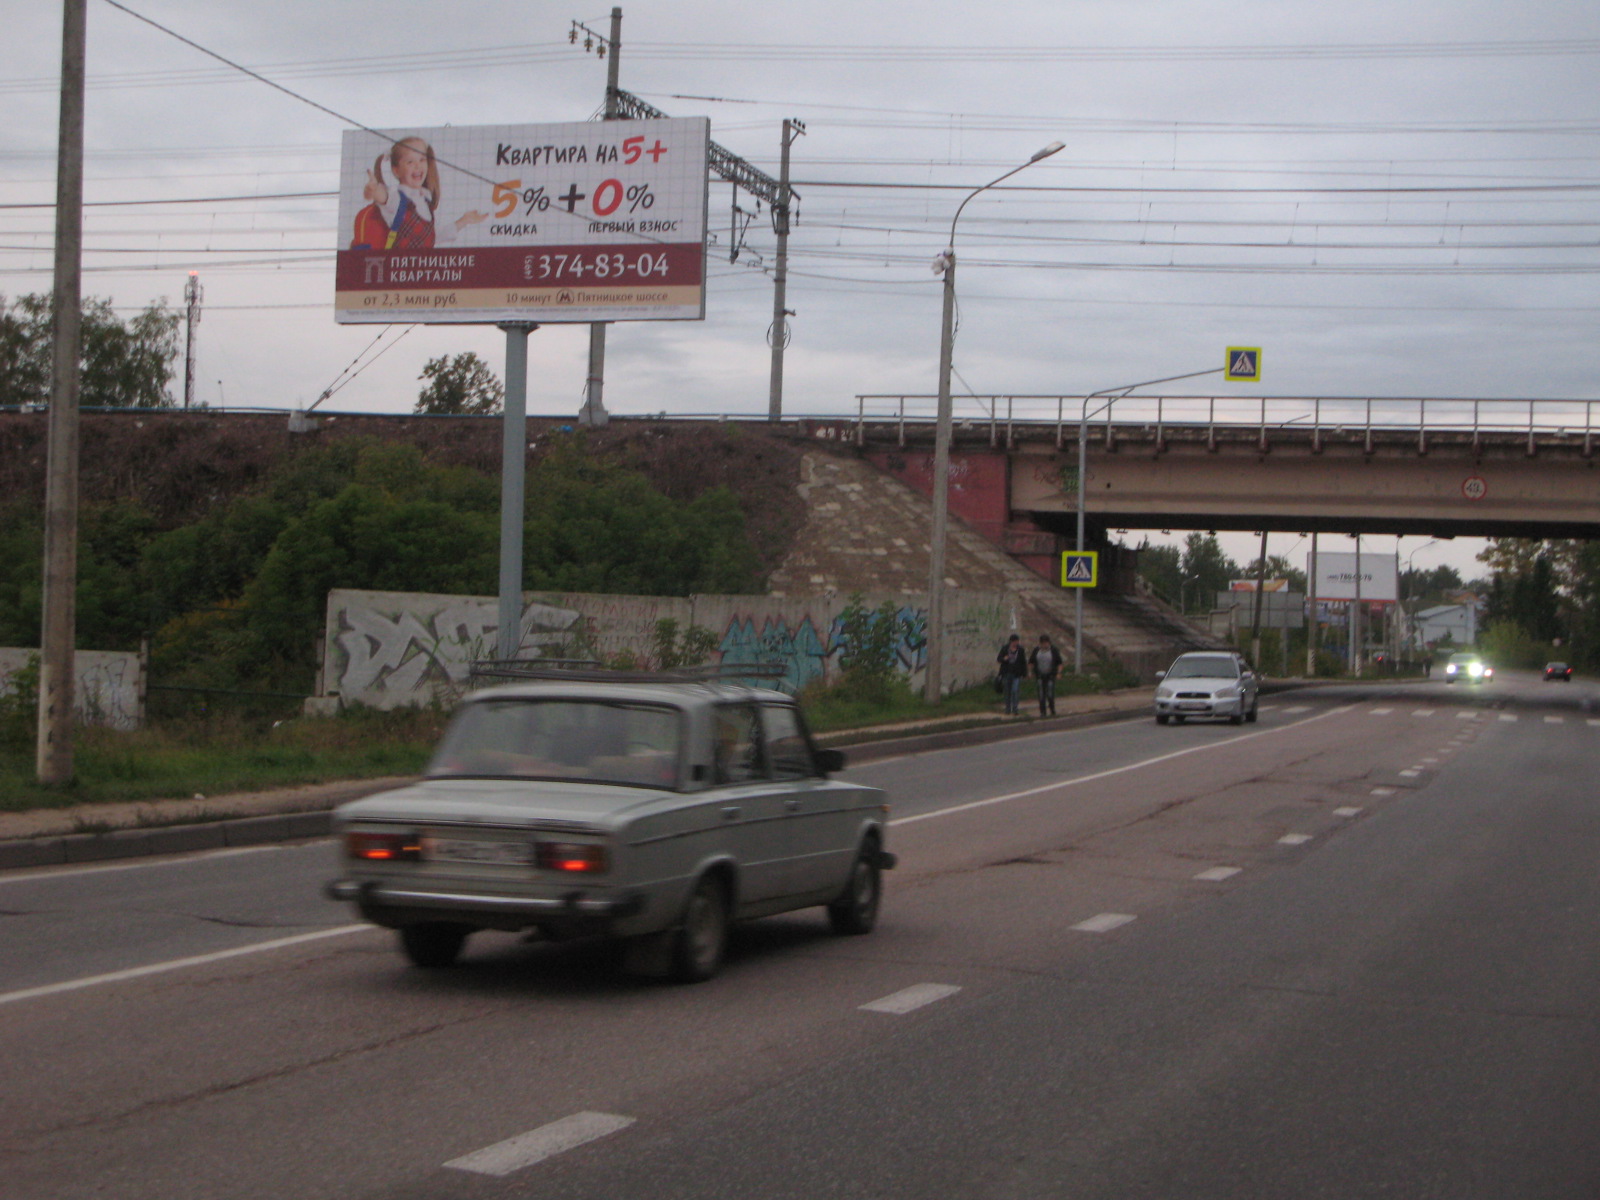 Пятницкое ш., 0,76 км после съезда с Ленинградского ш. (Красная ул.), справа, г.Солнечногорск